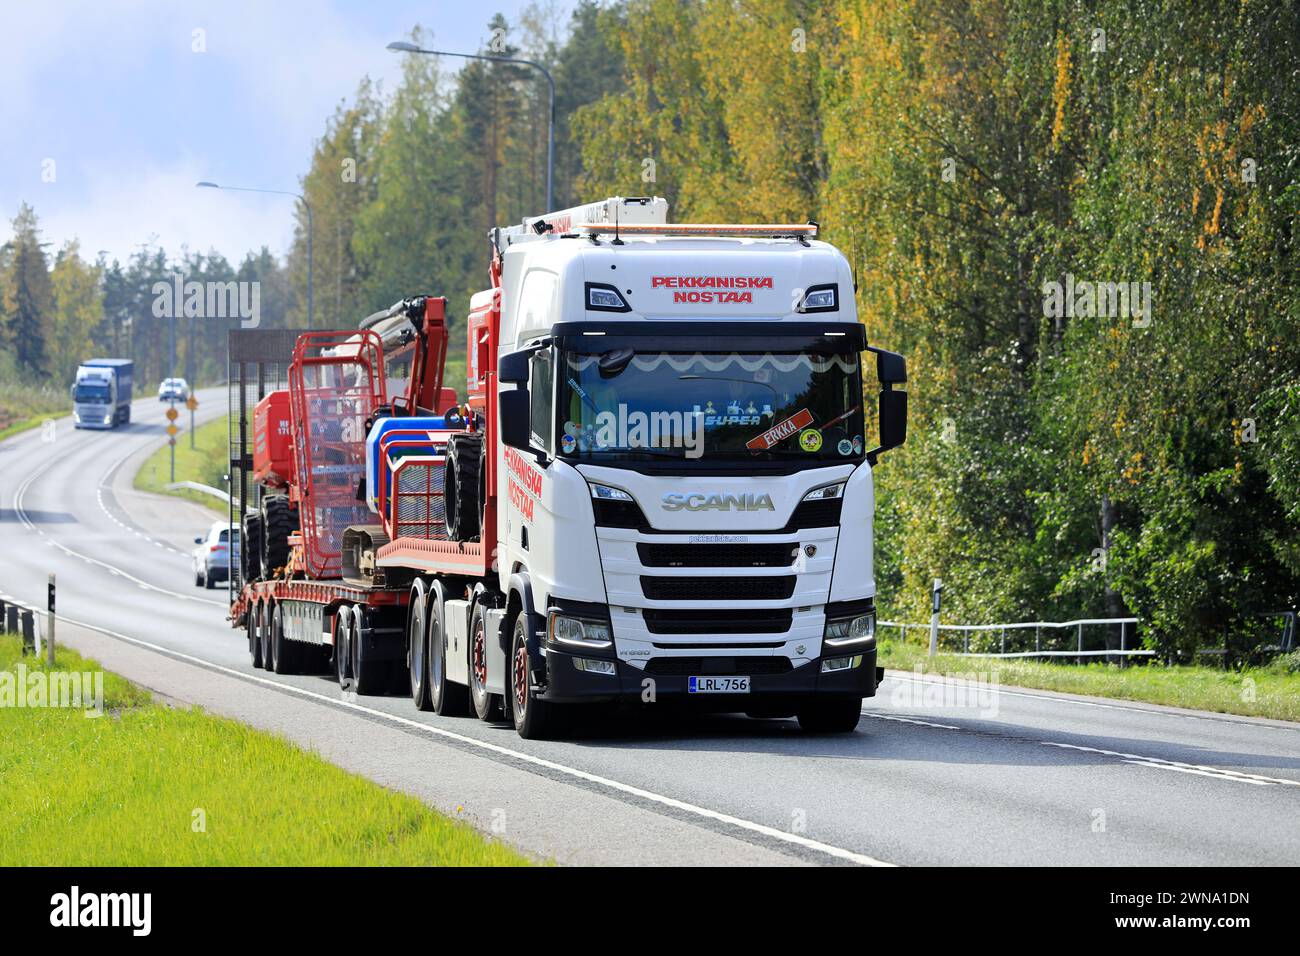 Le camion Scania R660 transporte des équipements de levage de Pekkaniska, société finlandaise leader louant des plates-formes et des grues. Raasepori, Finlande. 22 septembre 2023. Banque D'Images